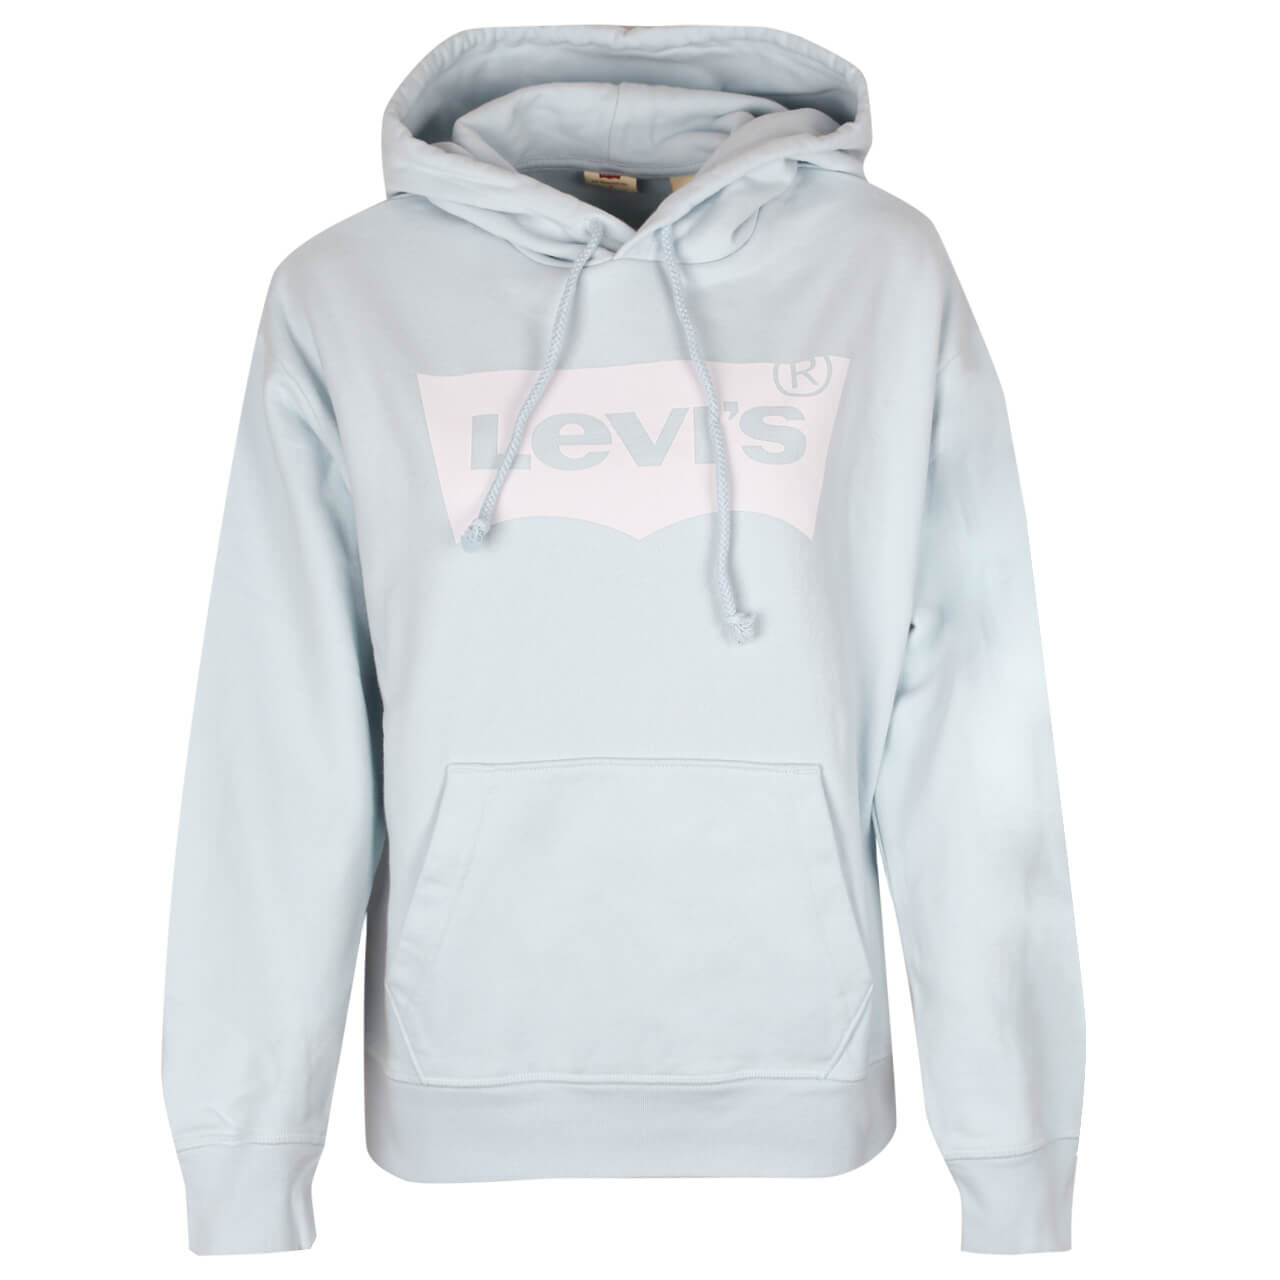 Levis Logo Hoodie Sweatshirt für Damen in Pastellblau mit Schriftzug, FarbNr.: 0158